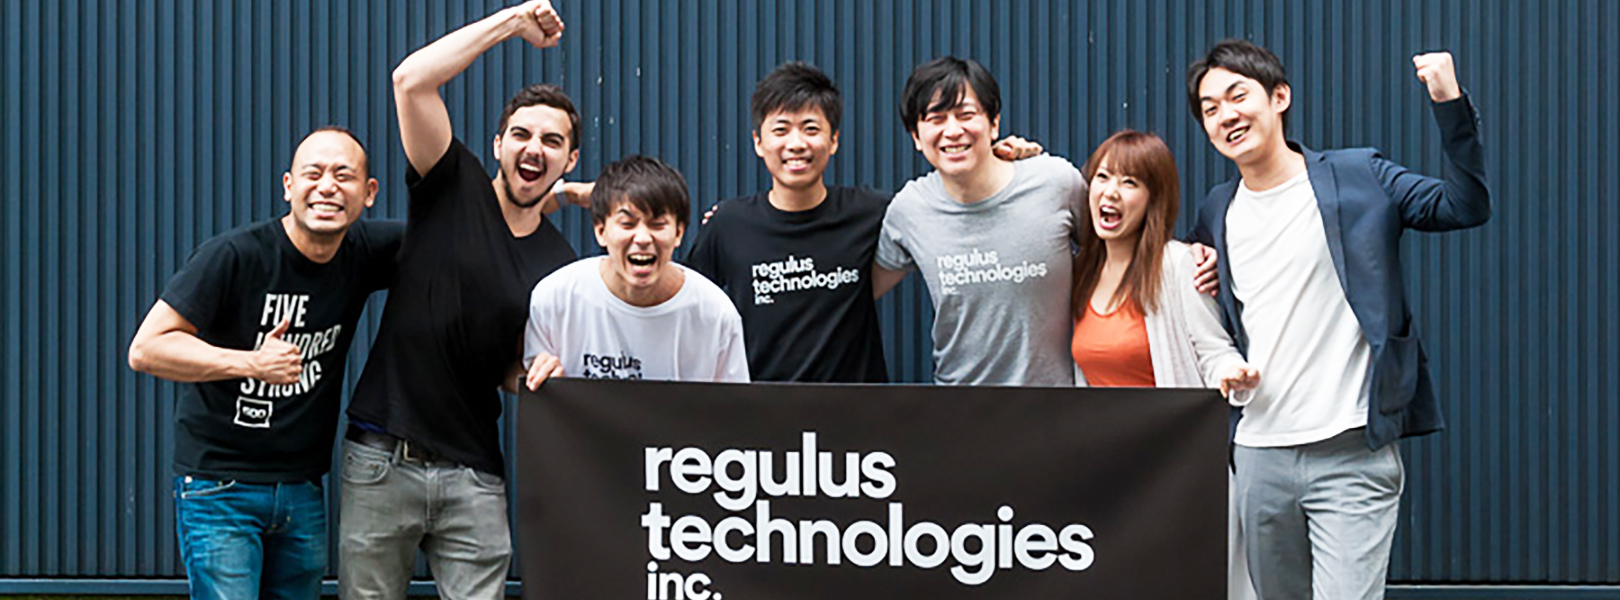 Regulustechnologies 株式会社の採用 求人 転職サイトgreen グリーン